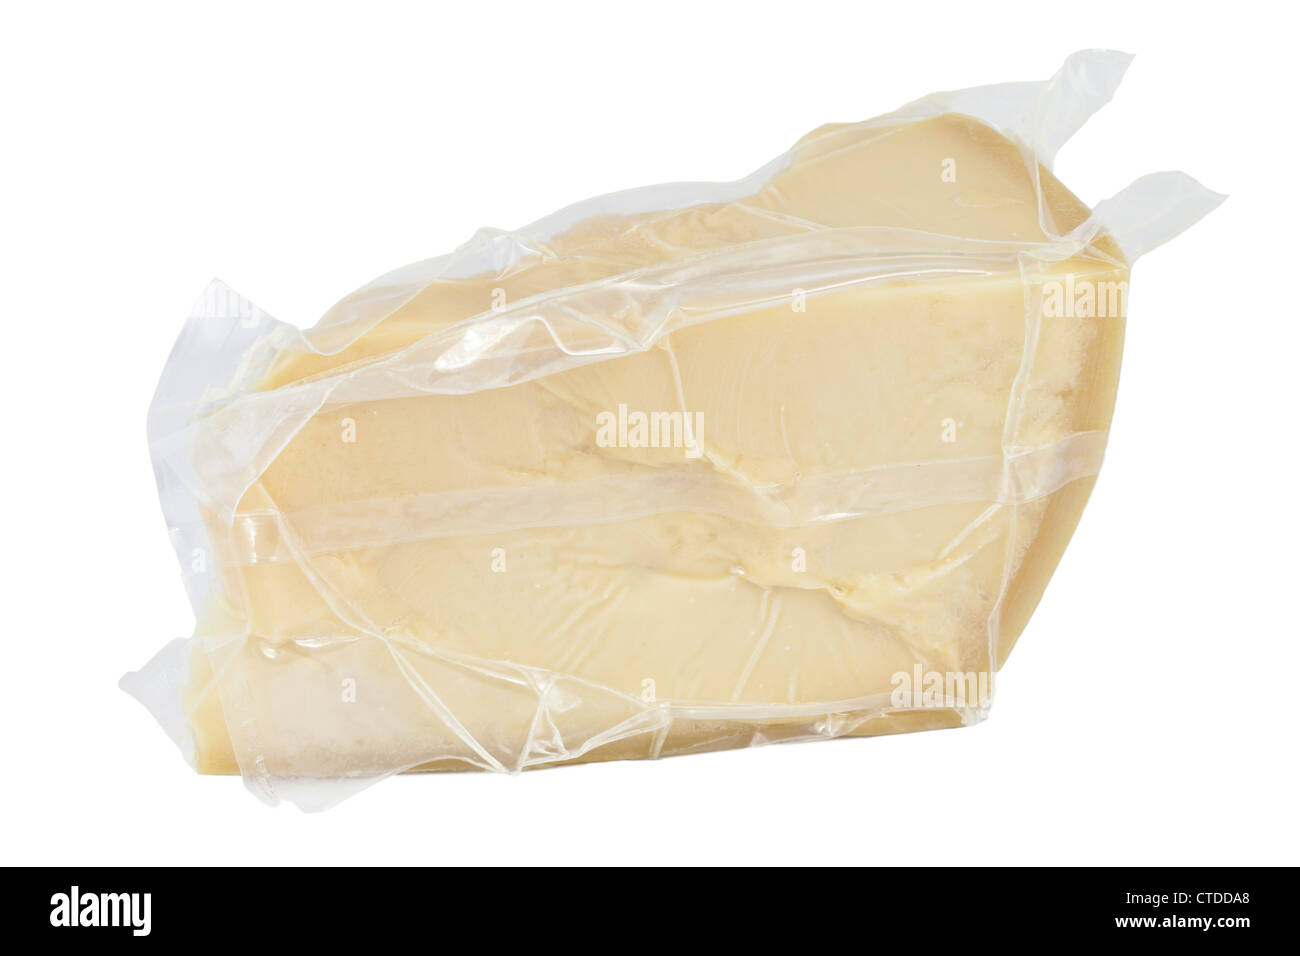 Un bloc emballés sous vide de fromage parmesan Banque D'Images